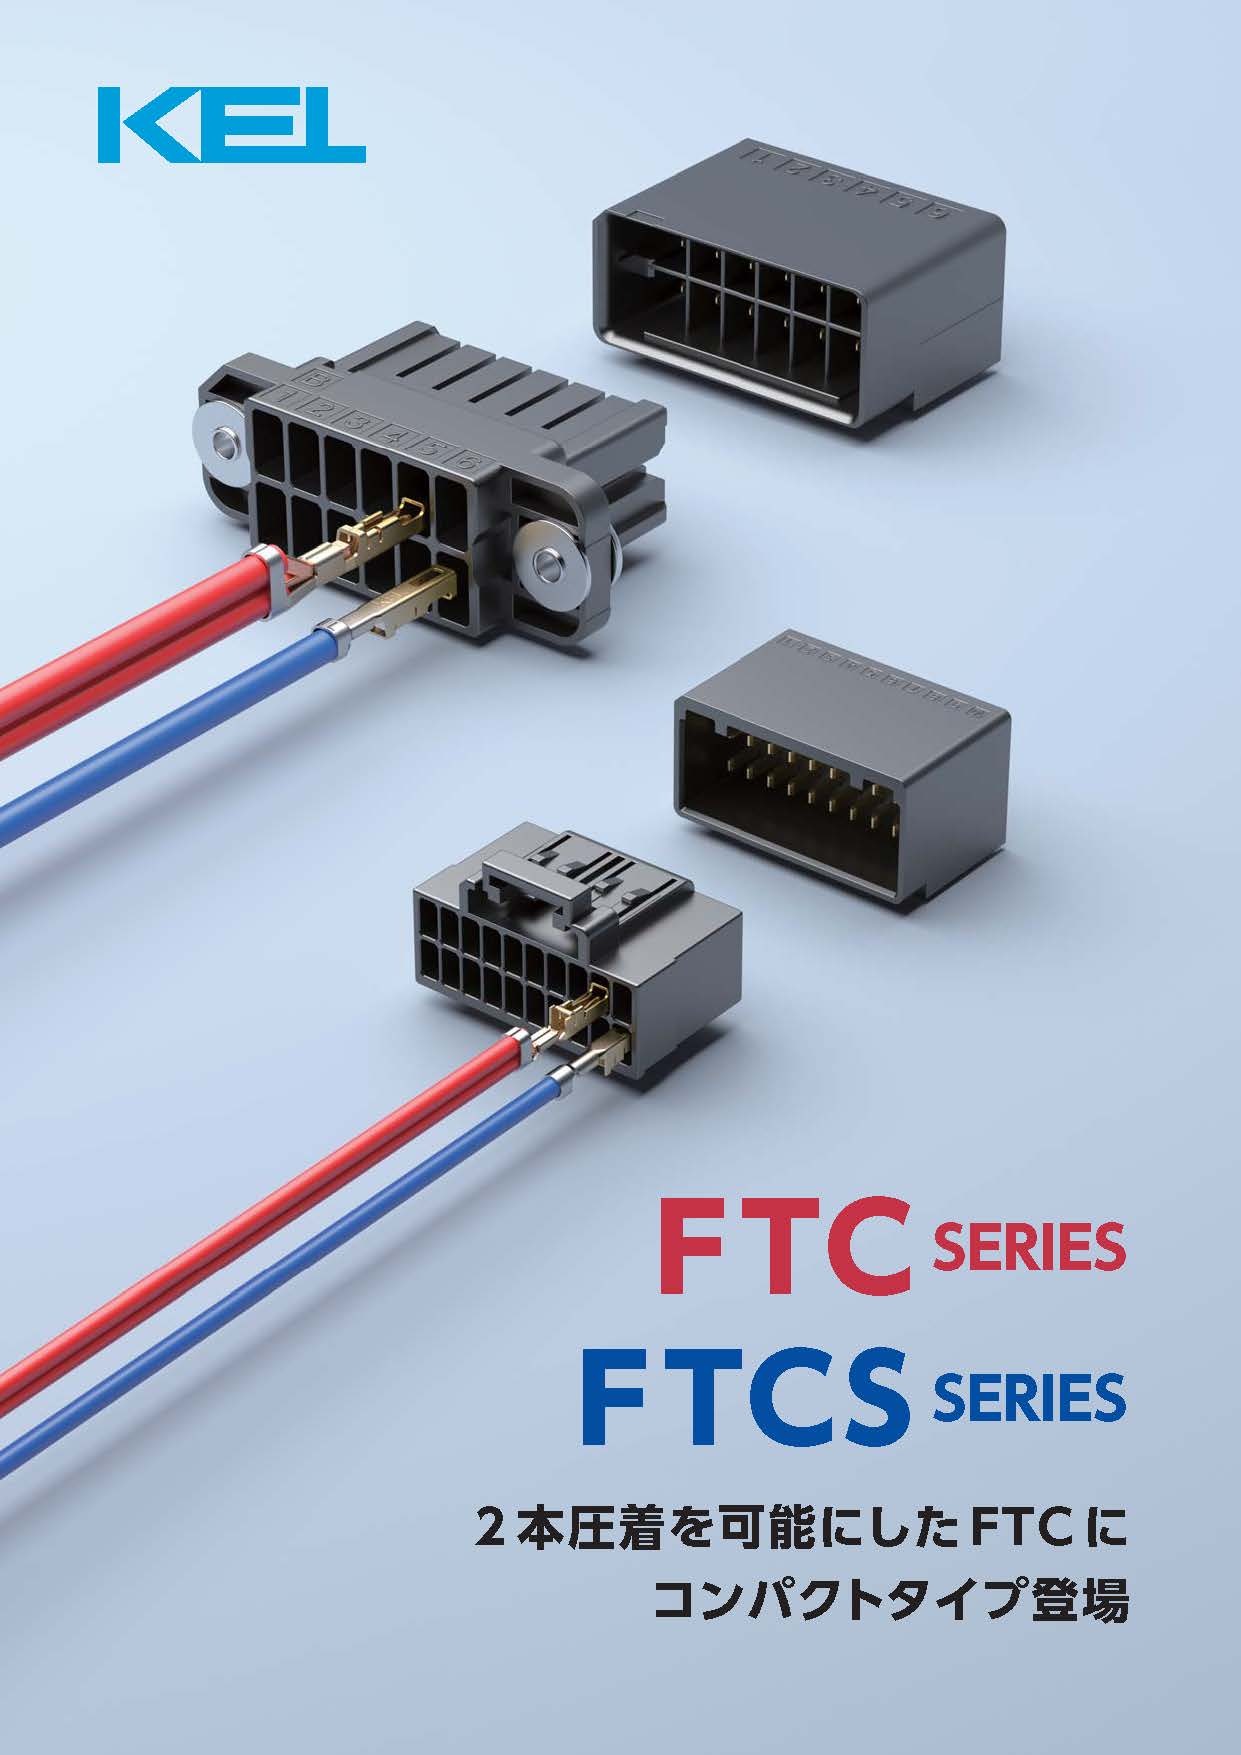 2本圧着ケーブル用コネクタ&quot;FTCシリーズ&quot;、&quot;FTCSシリーズ&quot;のパンフレットです。(発行：2023年10月)